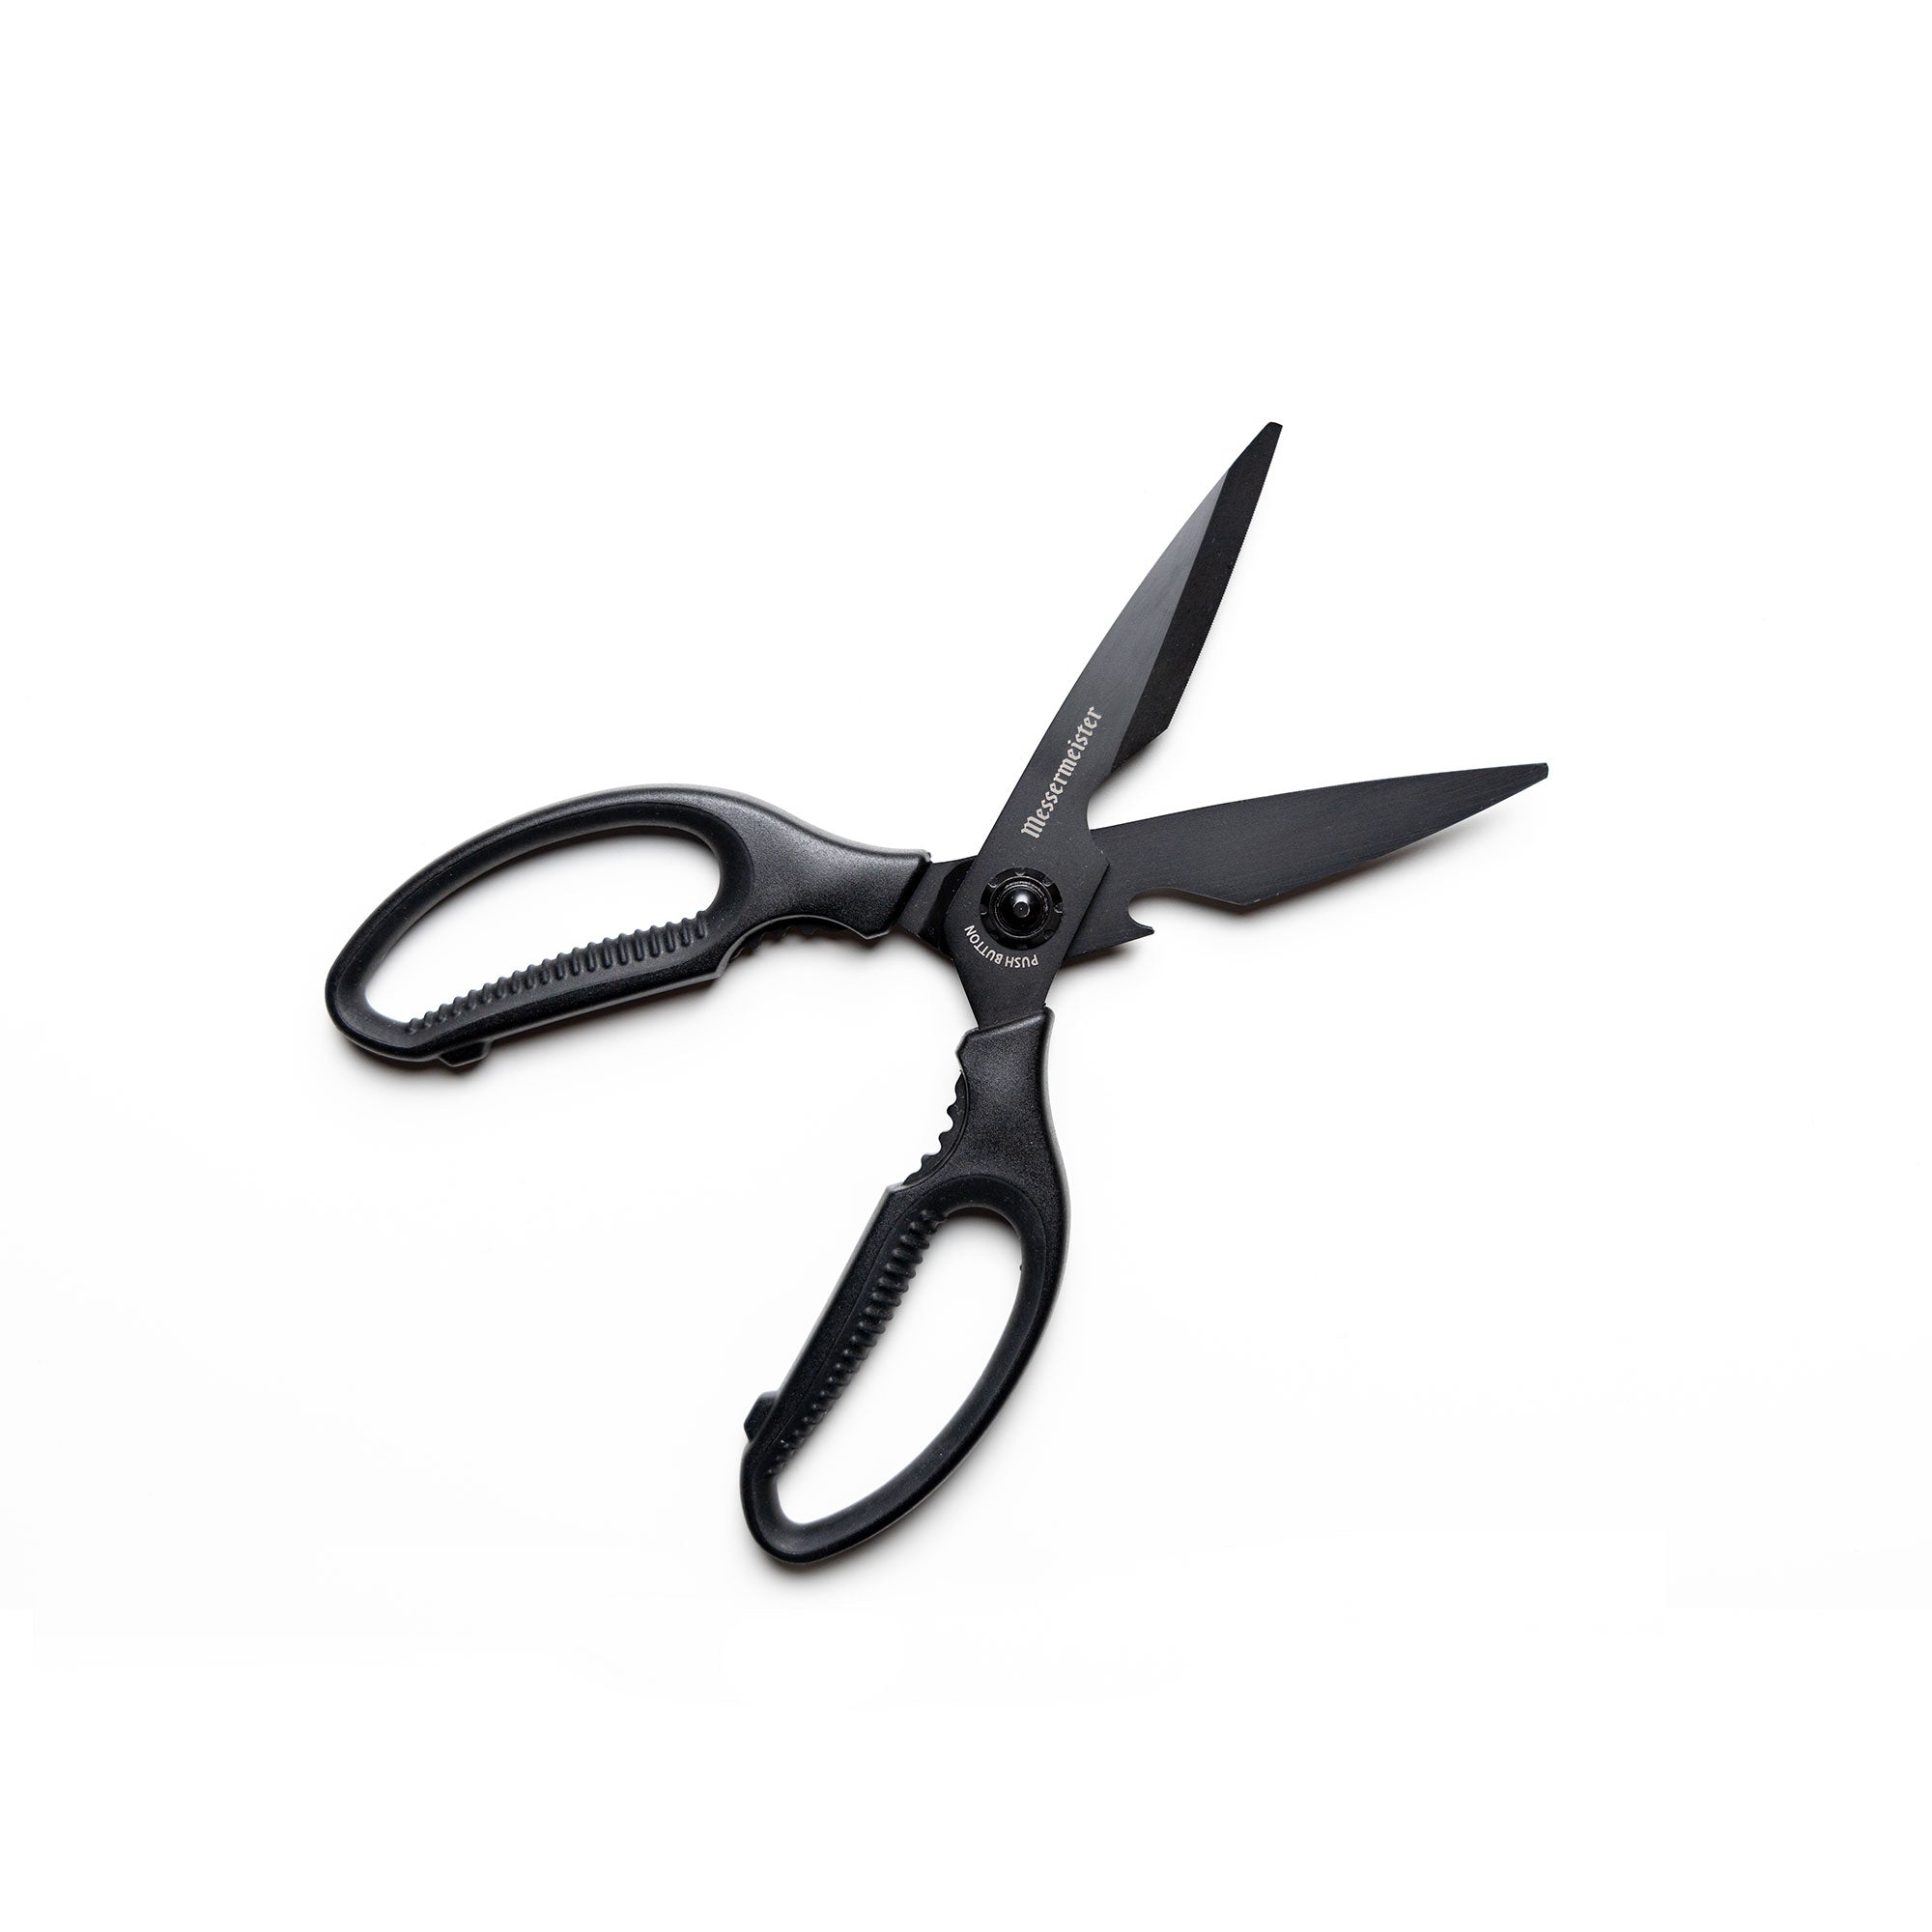 8in take apart kitchen scissors, DN-2070-Messermeister